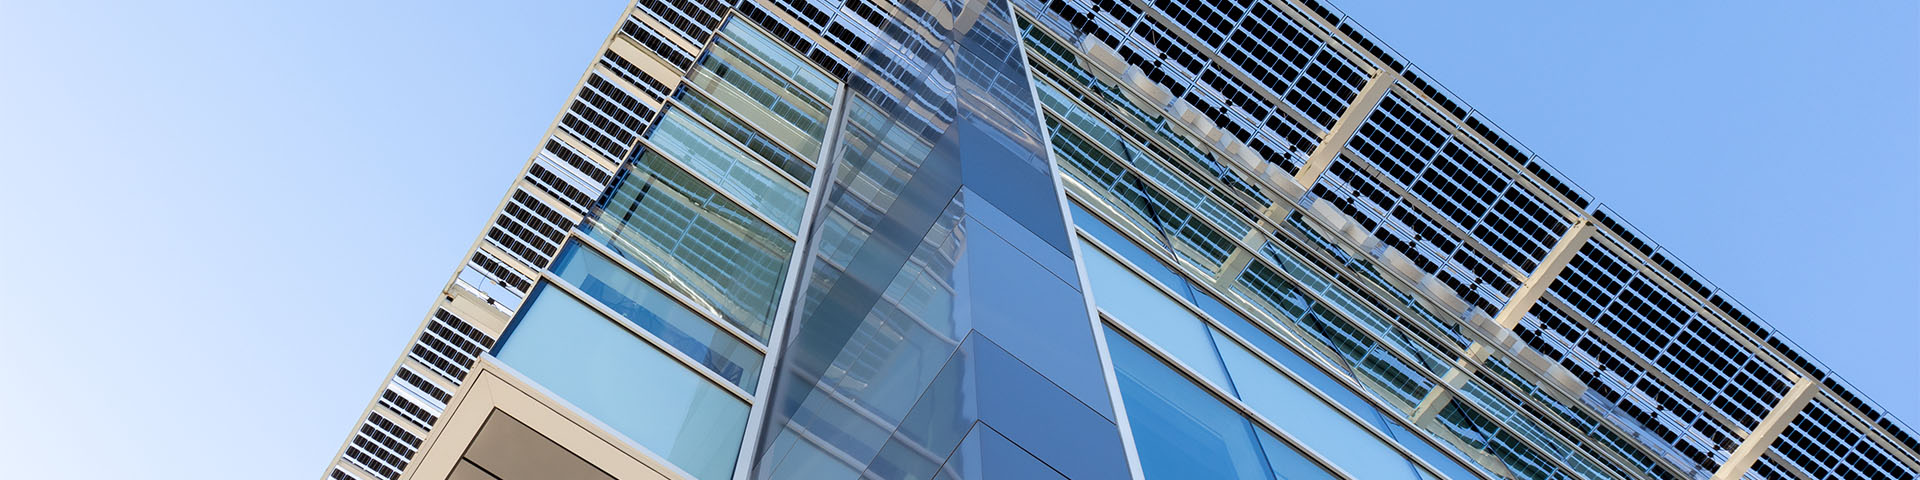 bentley corner view of glass building